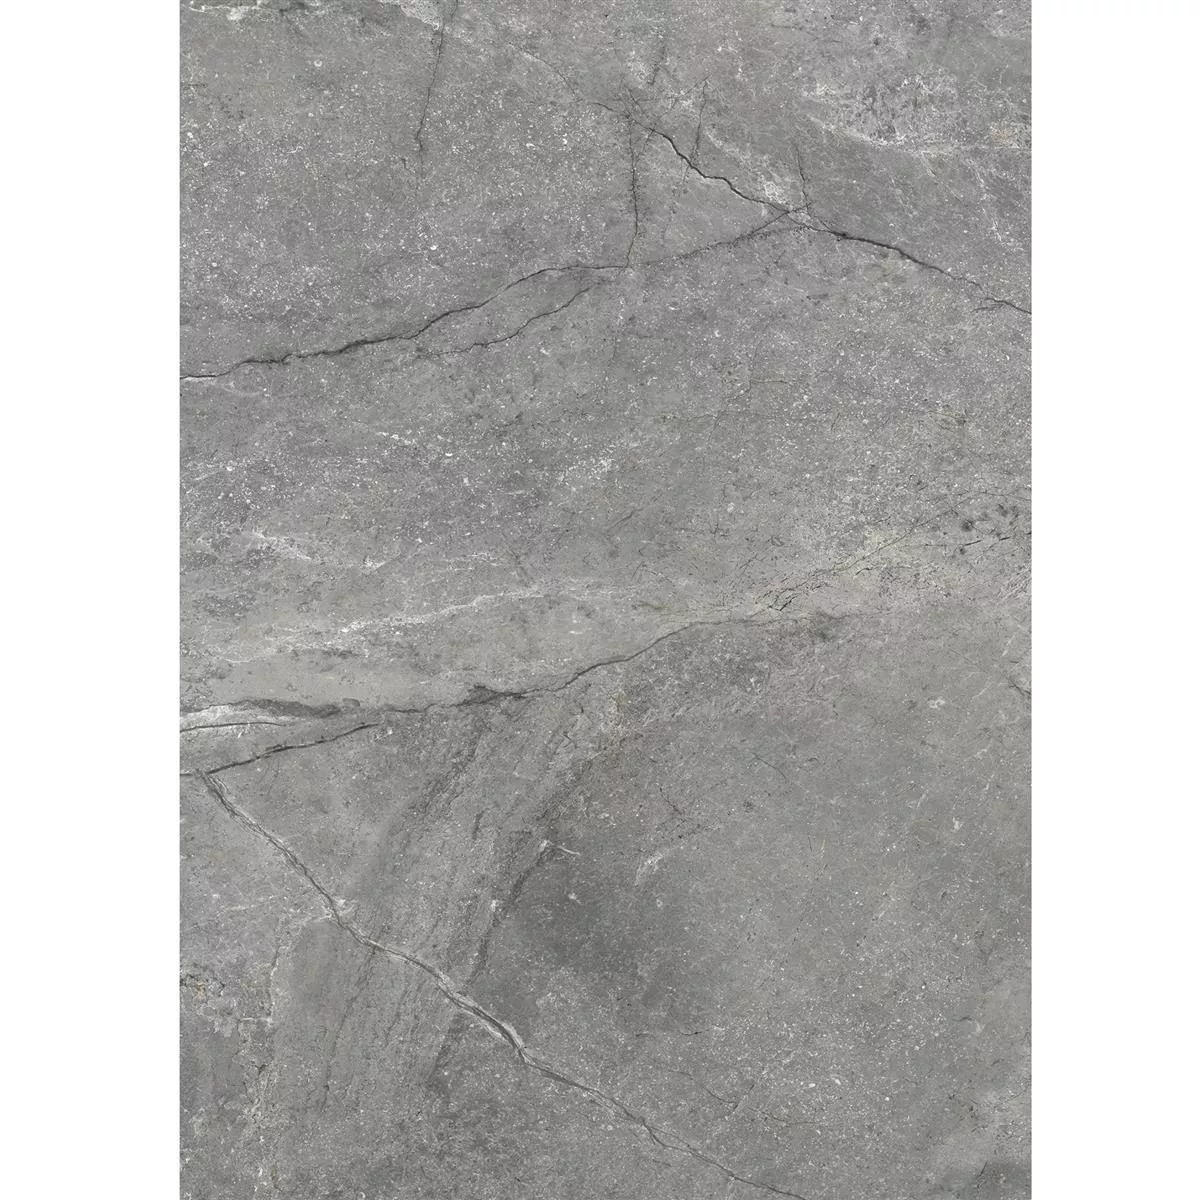 Πλακάκια Δαπέδου Pangea Μαρμάρινη Όψη Αμεμπτος Γκρί 60x120cm